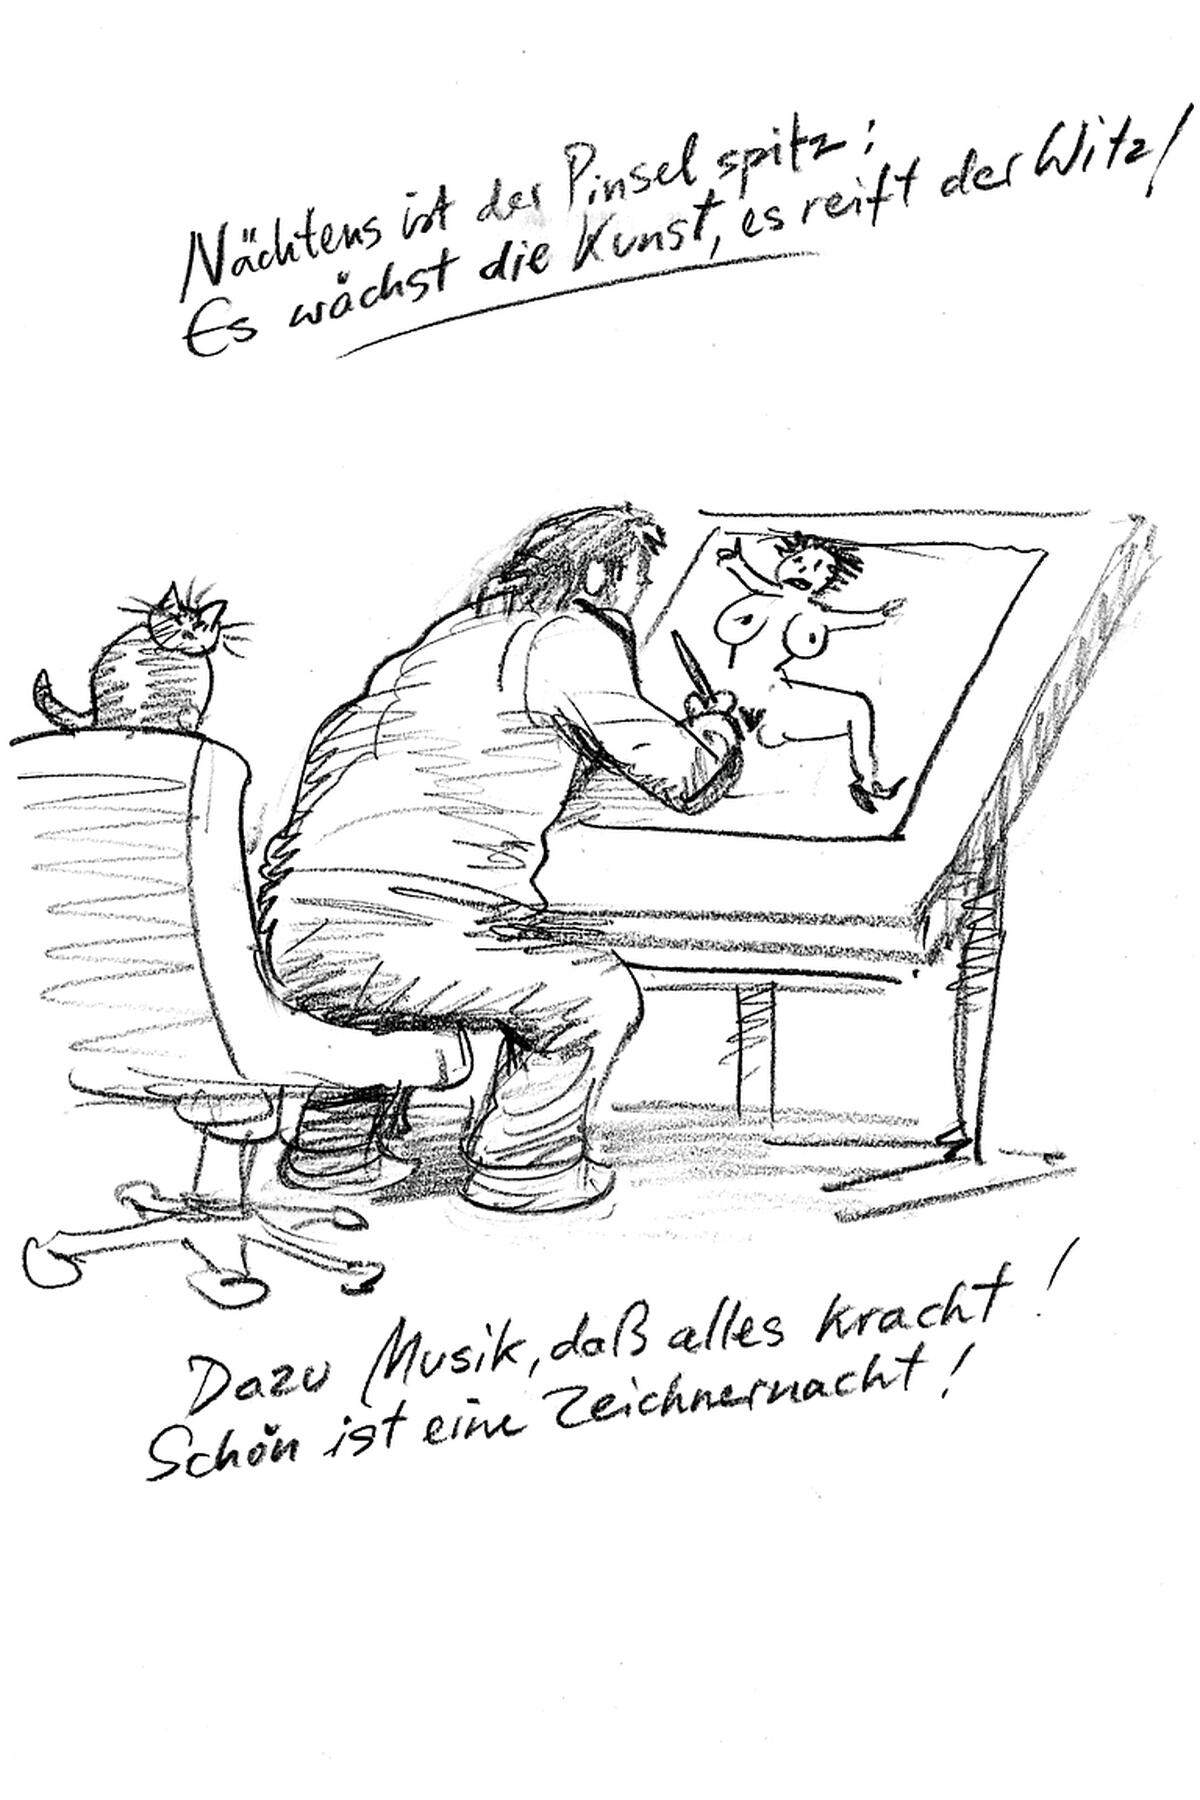 Der gebürtige St. Pöltner ist am vergangenen Samstag im Alter von 67 Jahren verstorben. In einem Nachruf würdigte das Karikaturmuseum Deix, dessen Arbeiten nicht nur längst Kunstwerke seien, sondern "Klassiker der österreichischen Karikatur und stilbildend für viele Kollegen".